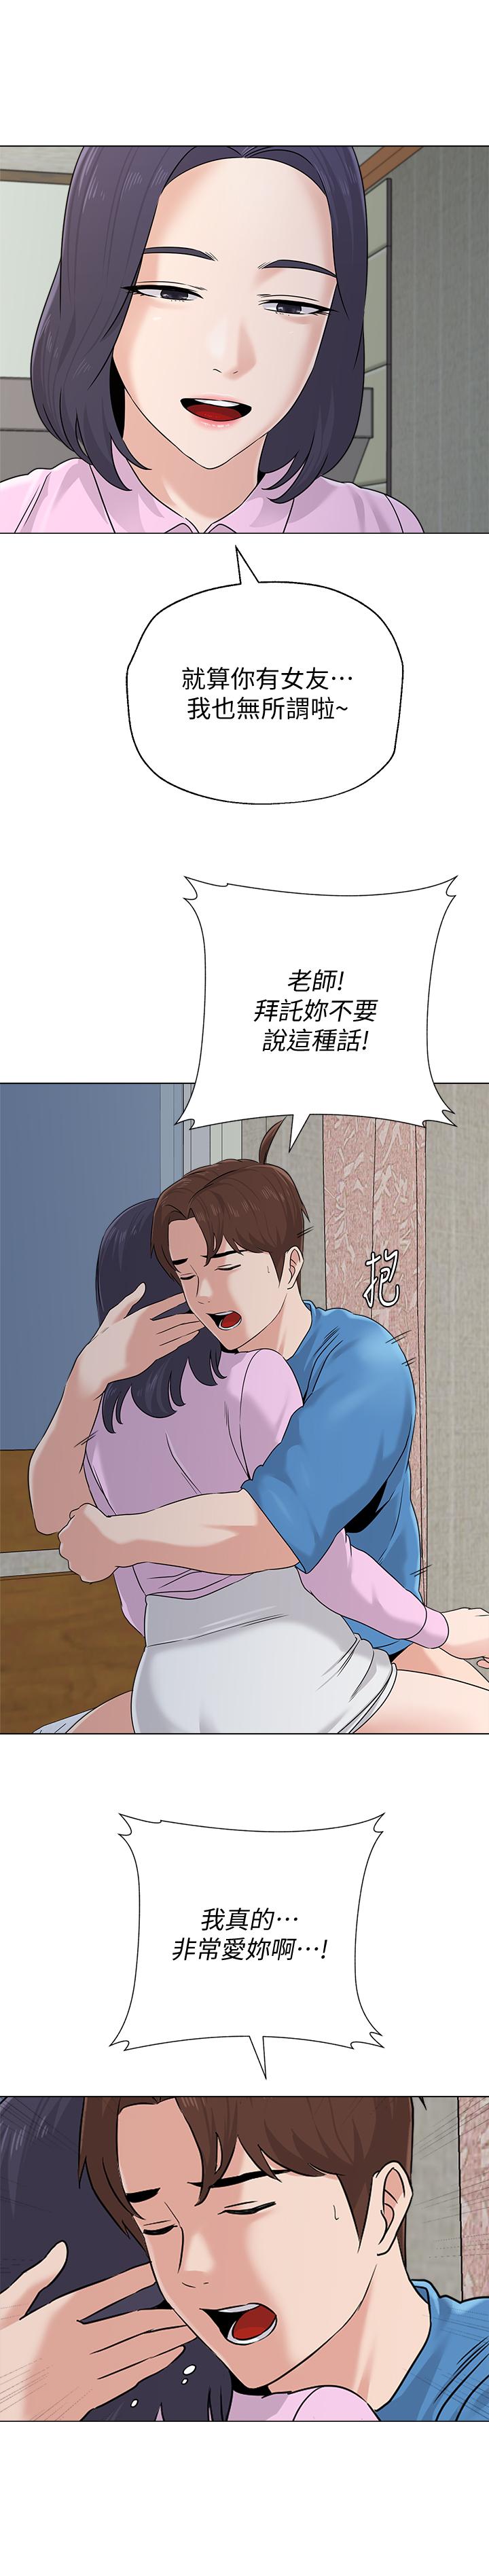 韩国污漫画 墮落教師 第72话-老师的私密处就在我眼前 1